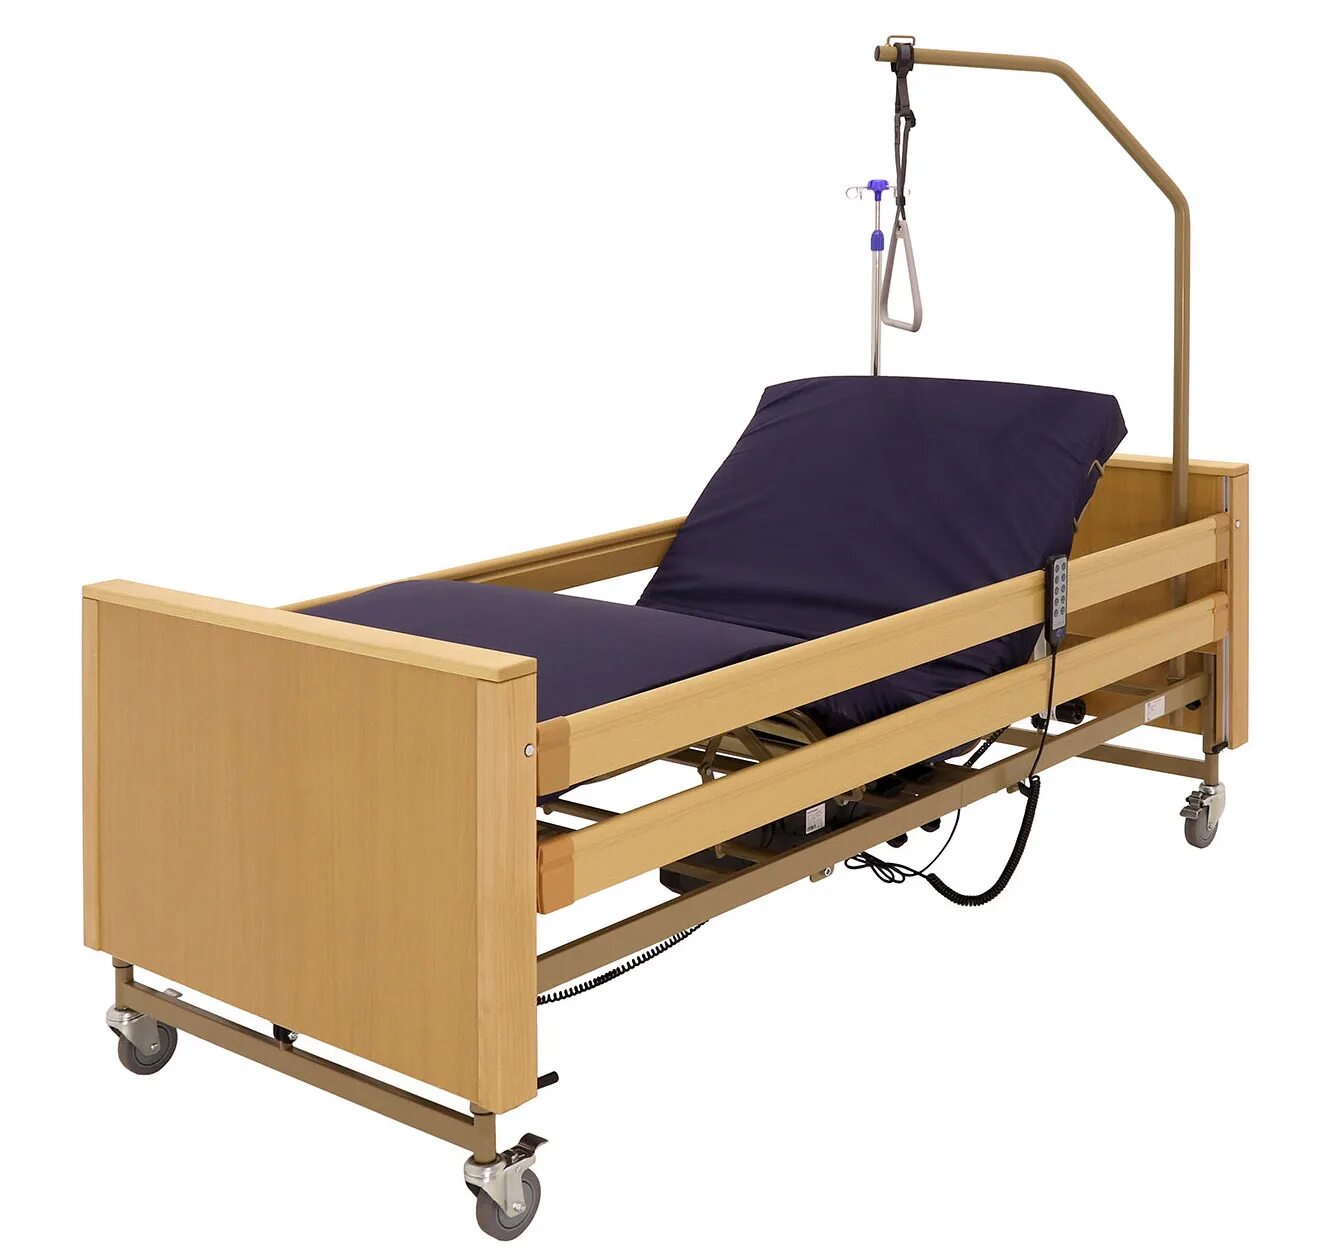 Кровать функциональная медицинская механическая yg-5 мм-5124н-13. Кровать функциональная медицинская м4024-04. Функциональная кровать yg -5. Медицинская многофункциональная кровать электрическая (yg-1). Многофункциональная кровать для лежачих больных